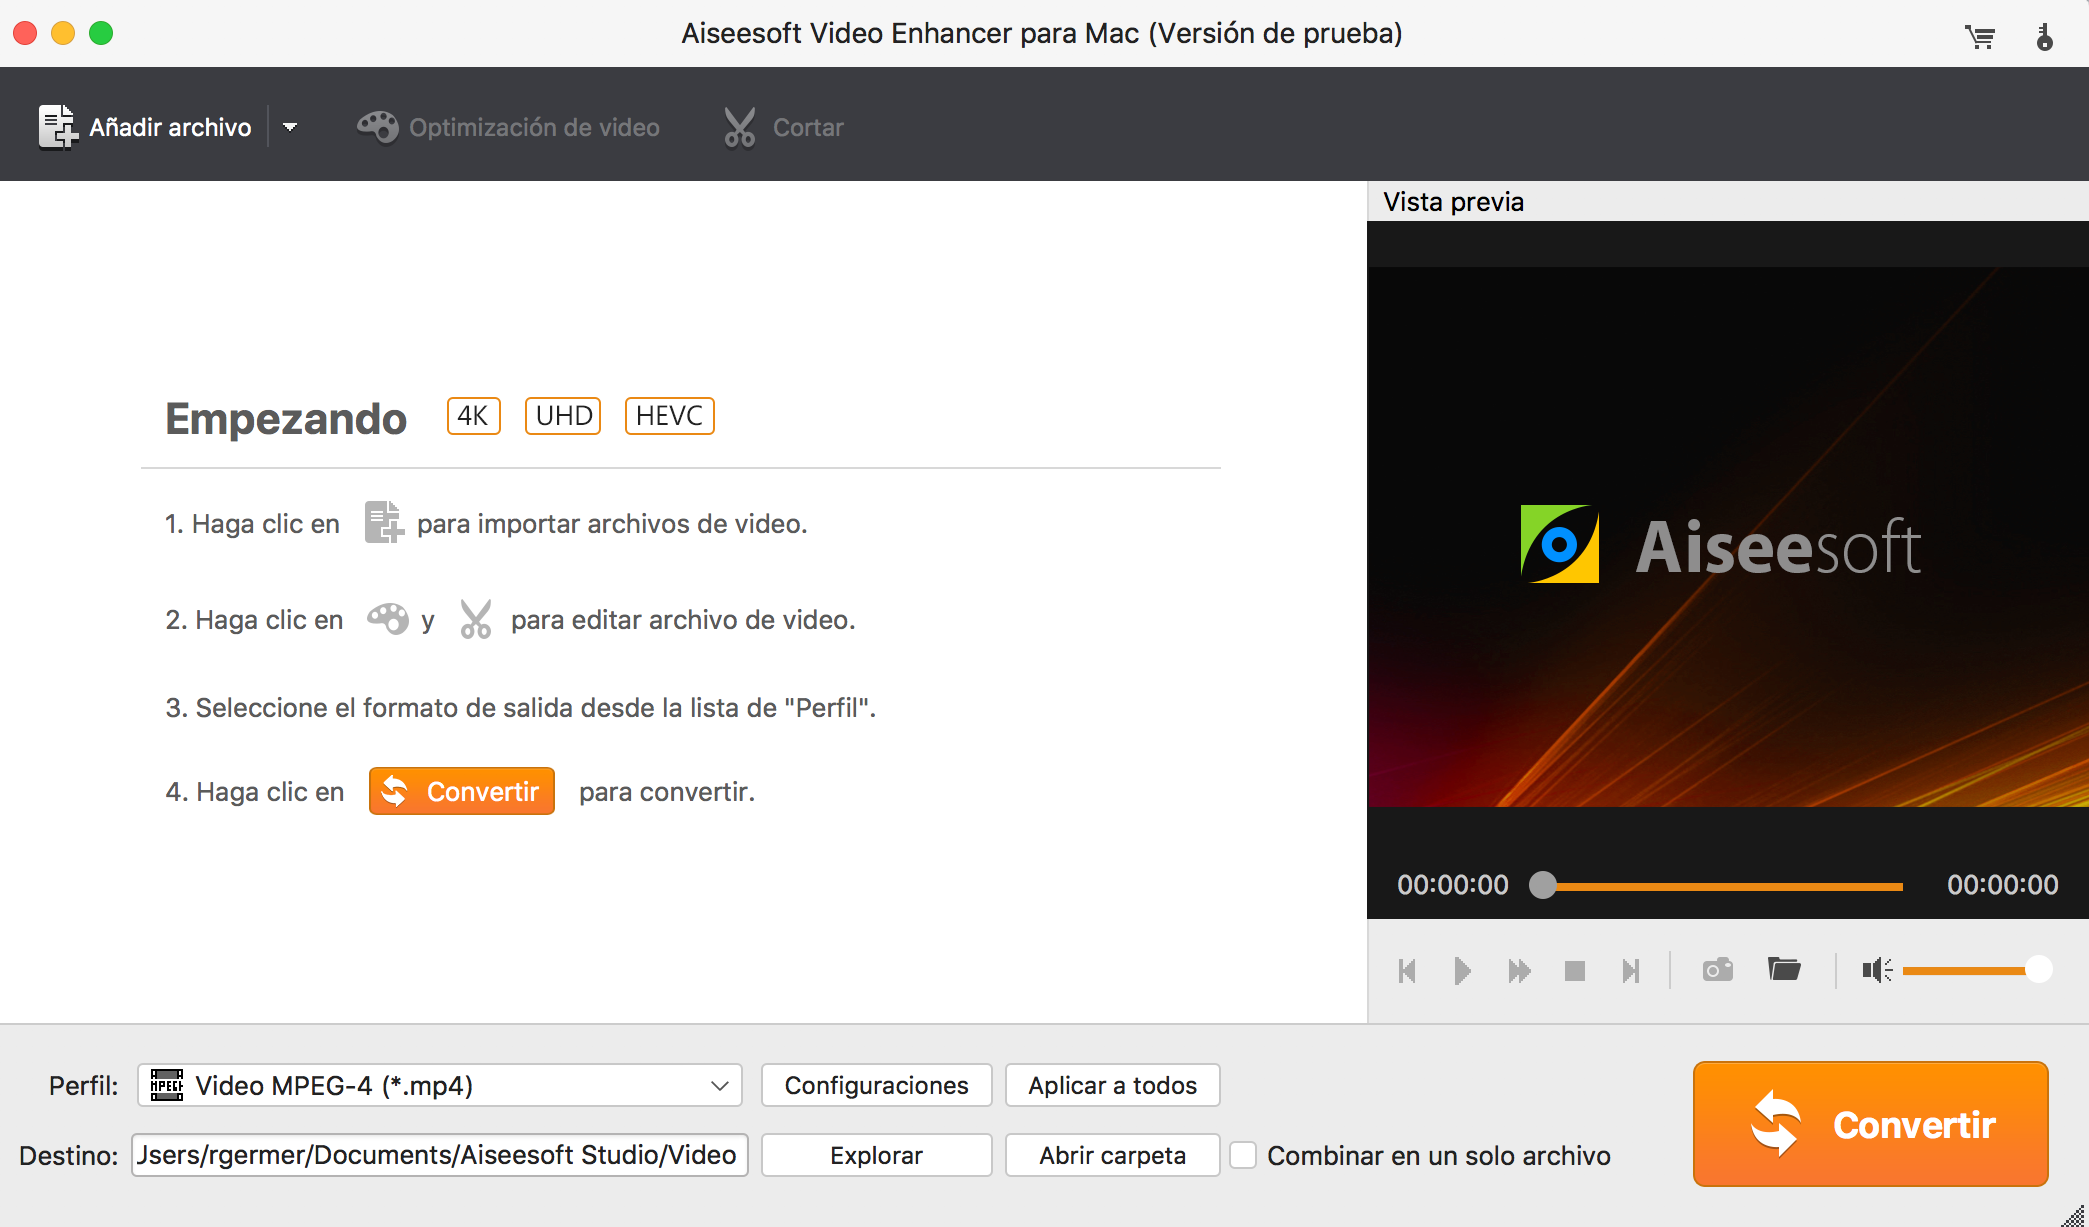 Pantalla de inicio de Aiseesoft Video Enhancer para Mac